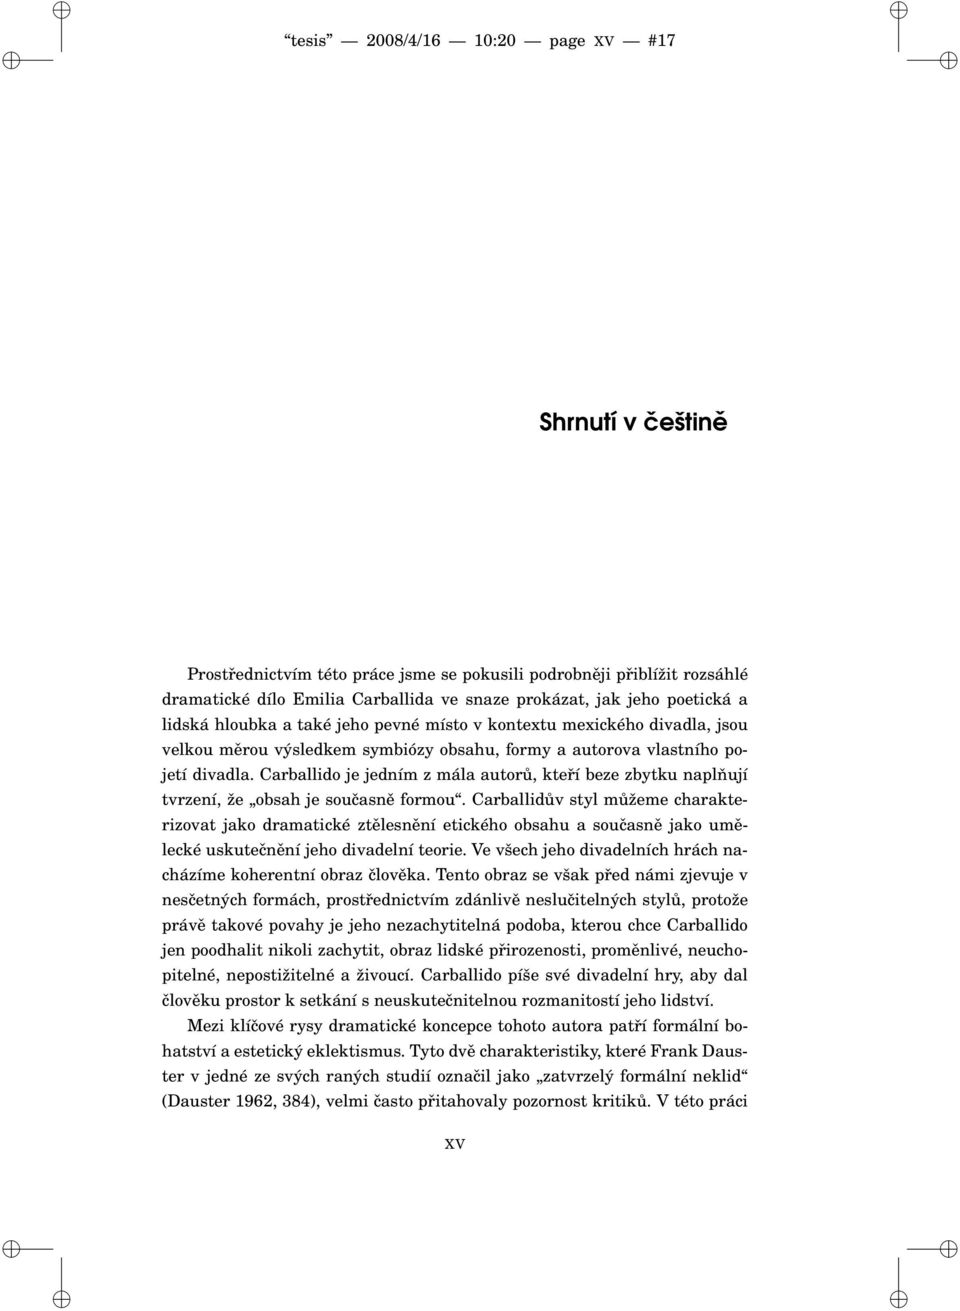 Carballido je jedním z mála autorů, kteří beze zbytku naplňují tvrzení, že obsah je současně formou.